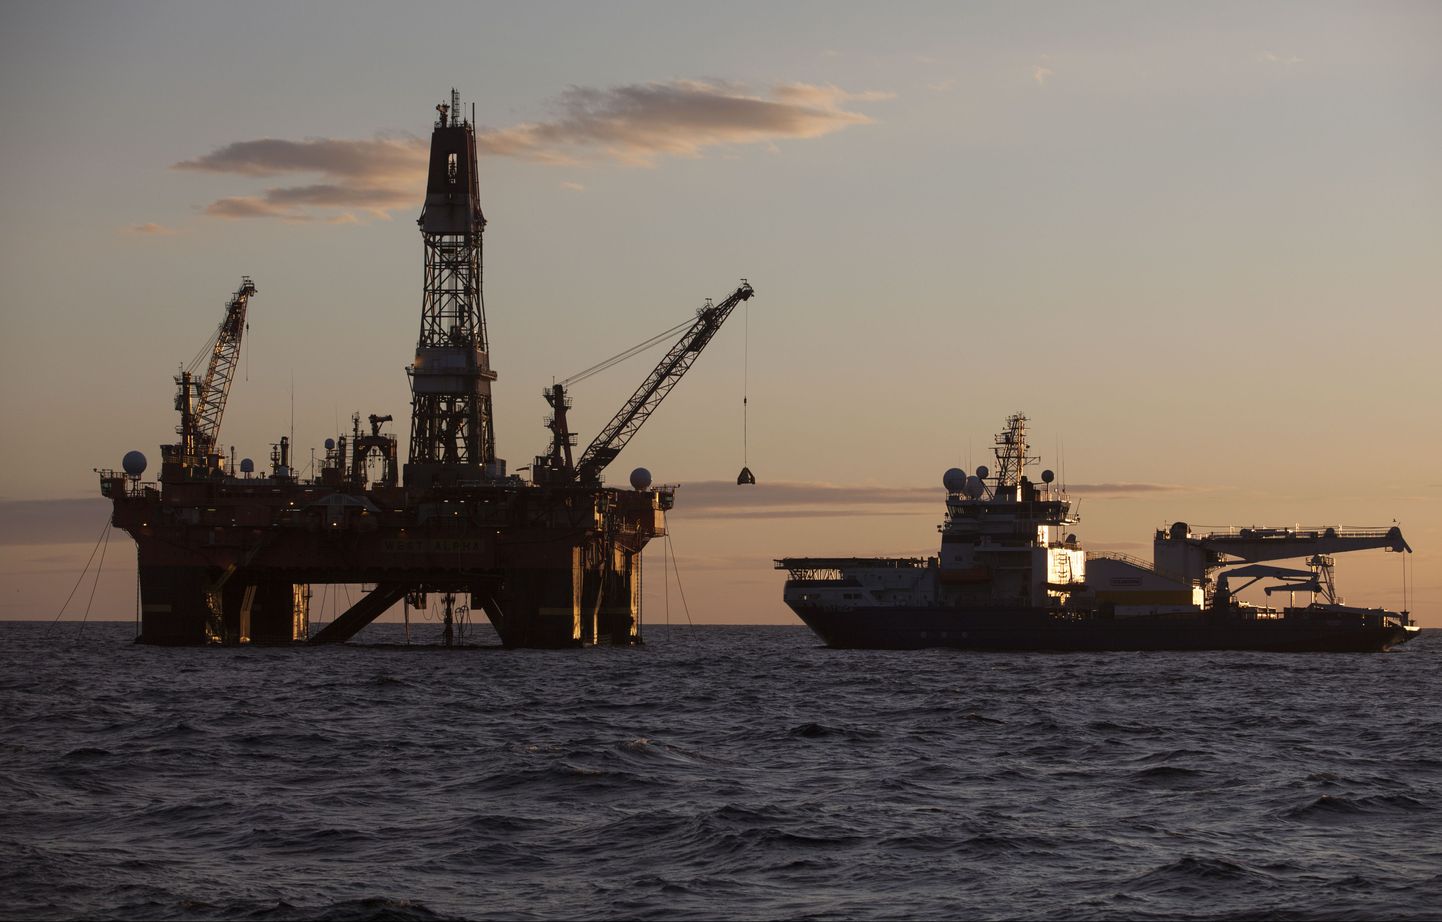 Vene ettevõtte Rosneft puurplatvorm Põhja-Jäämere ääremeres Kara meres.